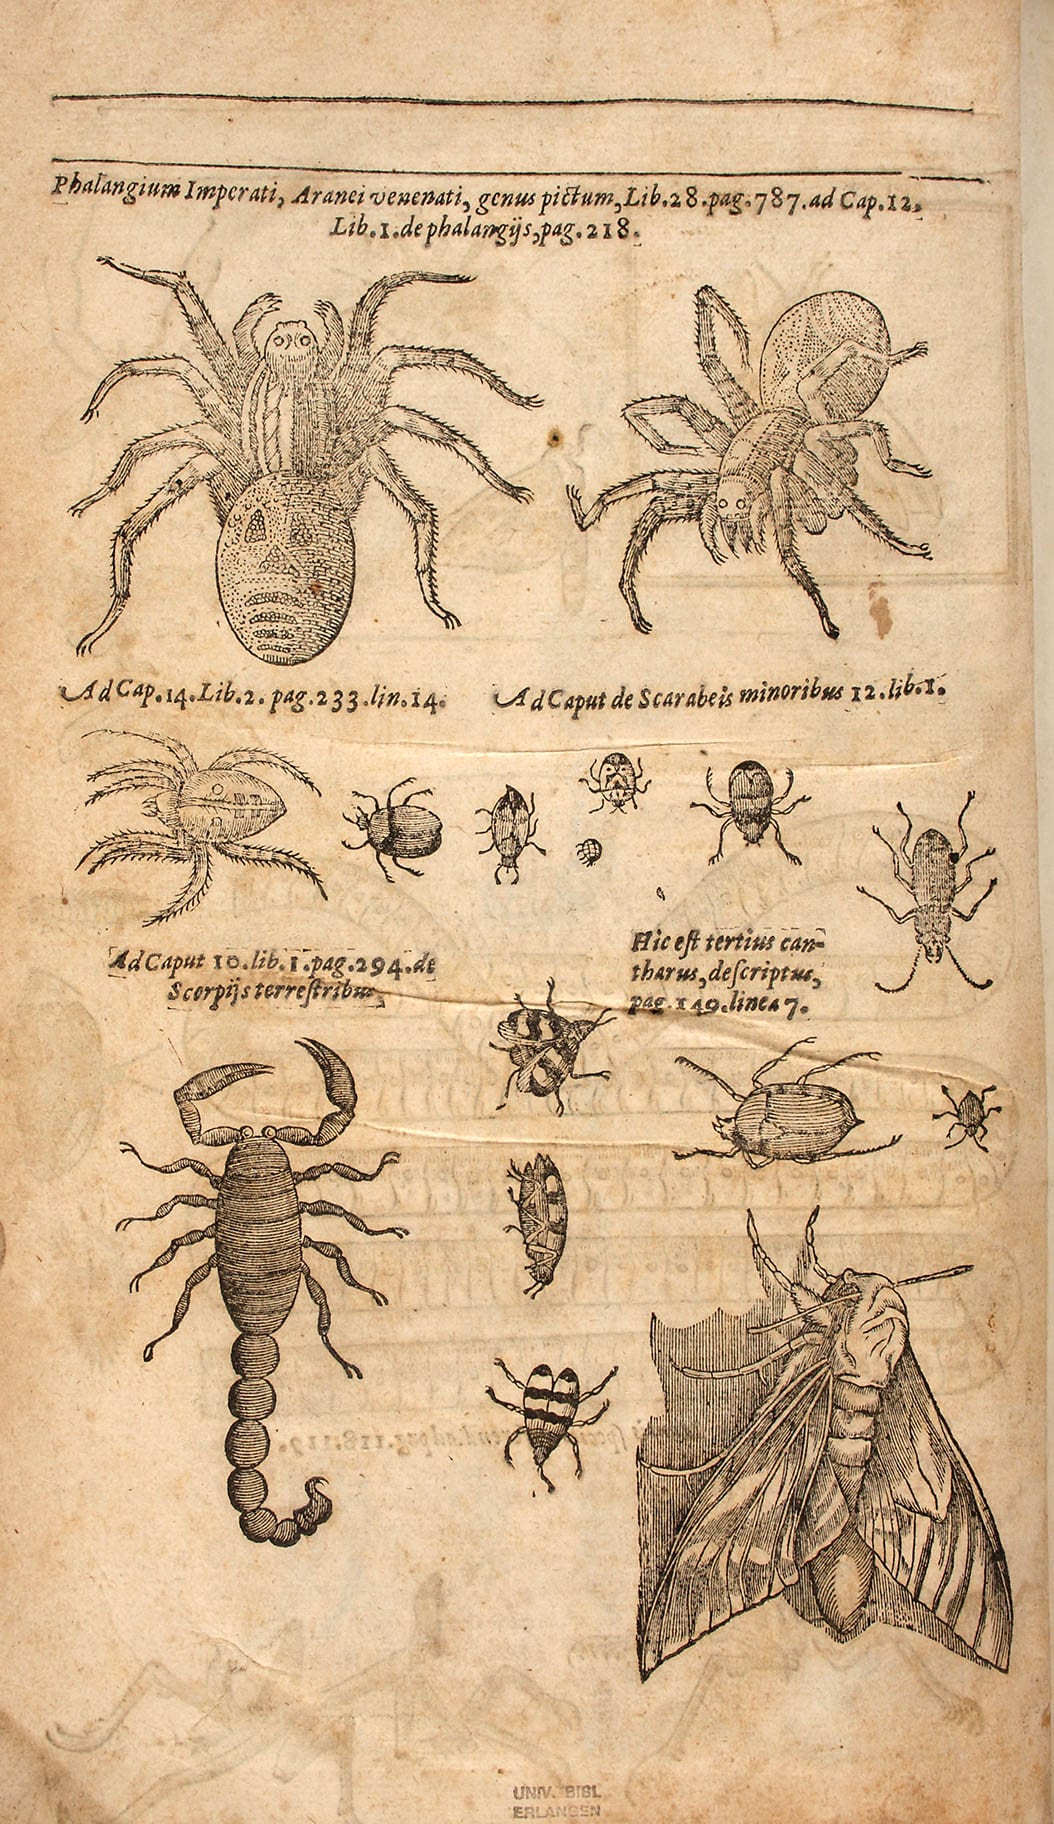 Thomas Moffett (1553-1604): Insectorum sive minimorum animalium theatrum - Abbildungen von Spinnentieren und Käfern